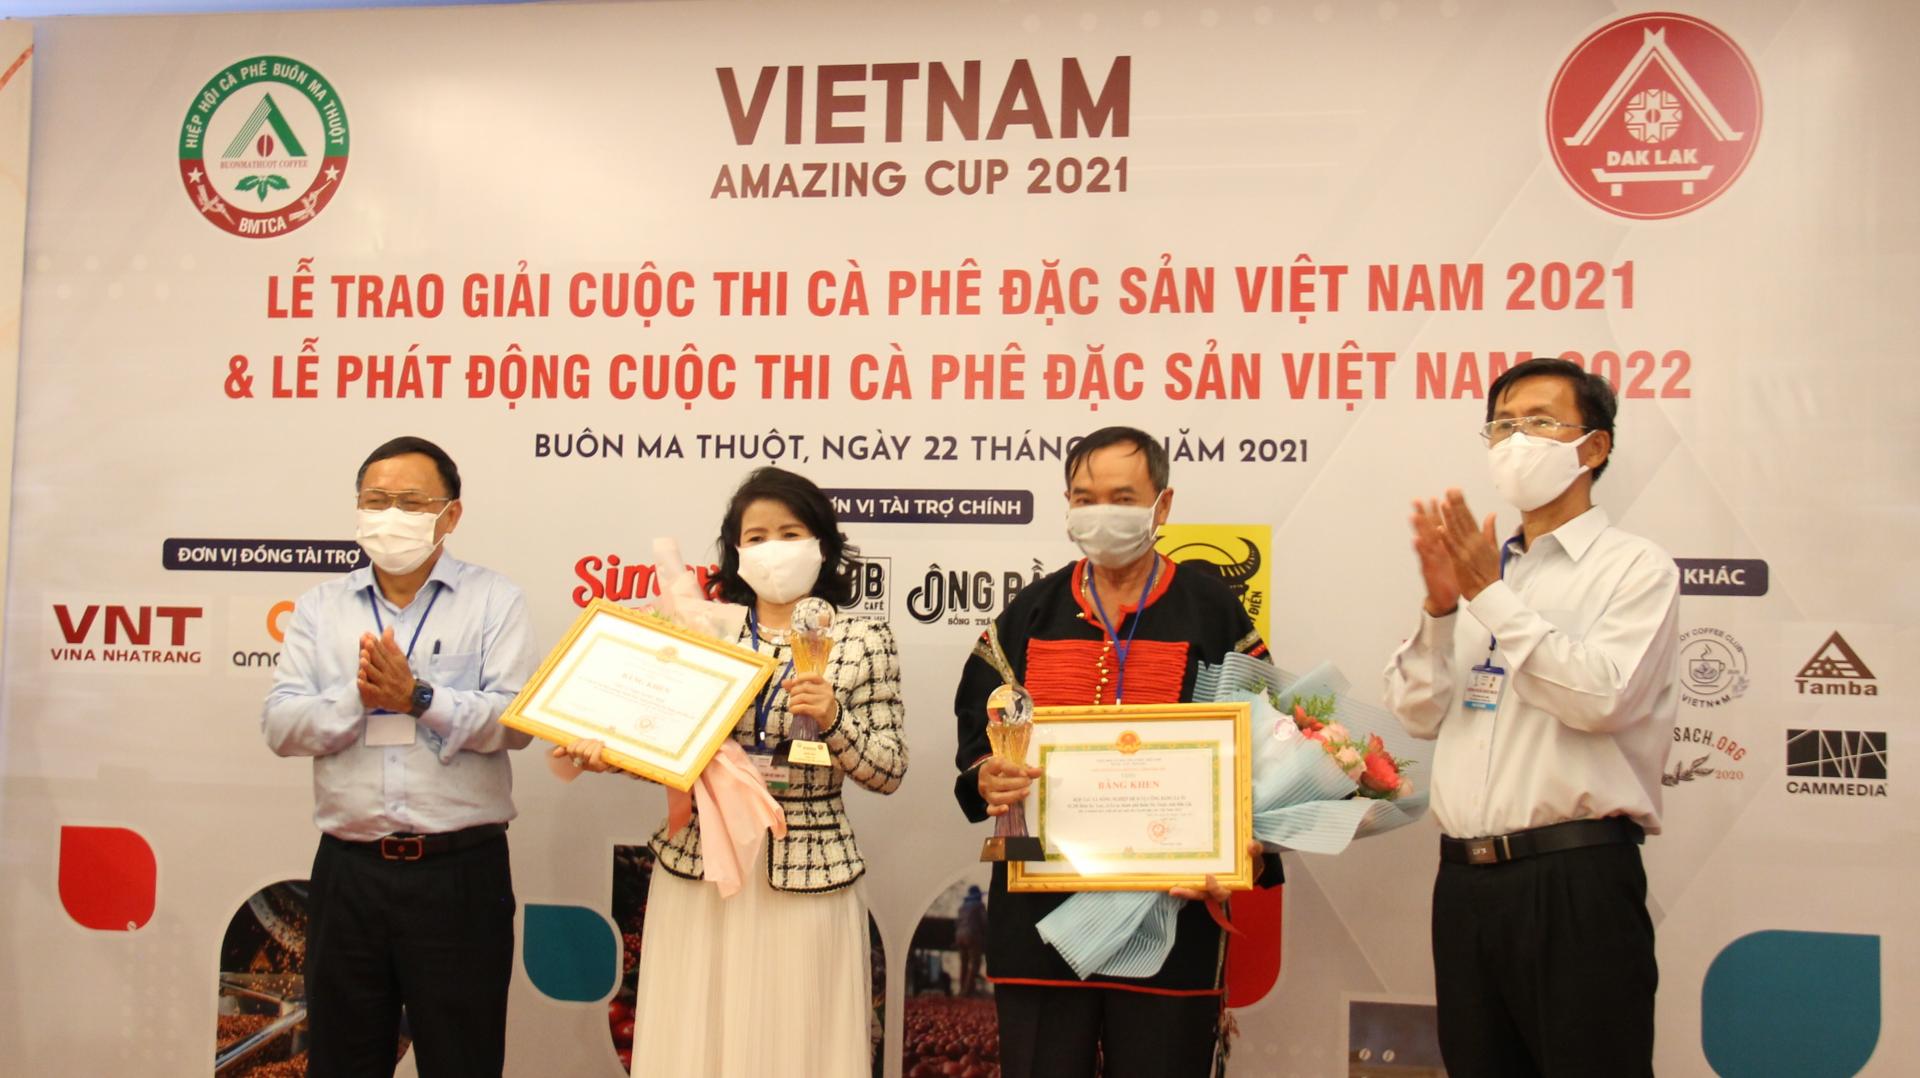 Khởi động Viet Nam Amazing Cup 2022: Nâng tầm vị thế cà phê đặc sản